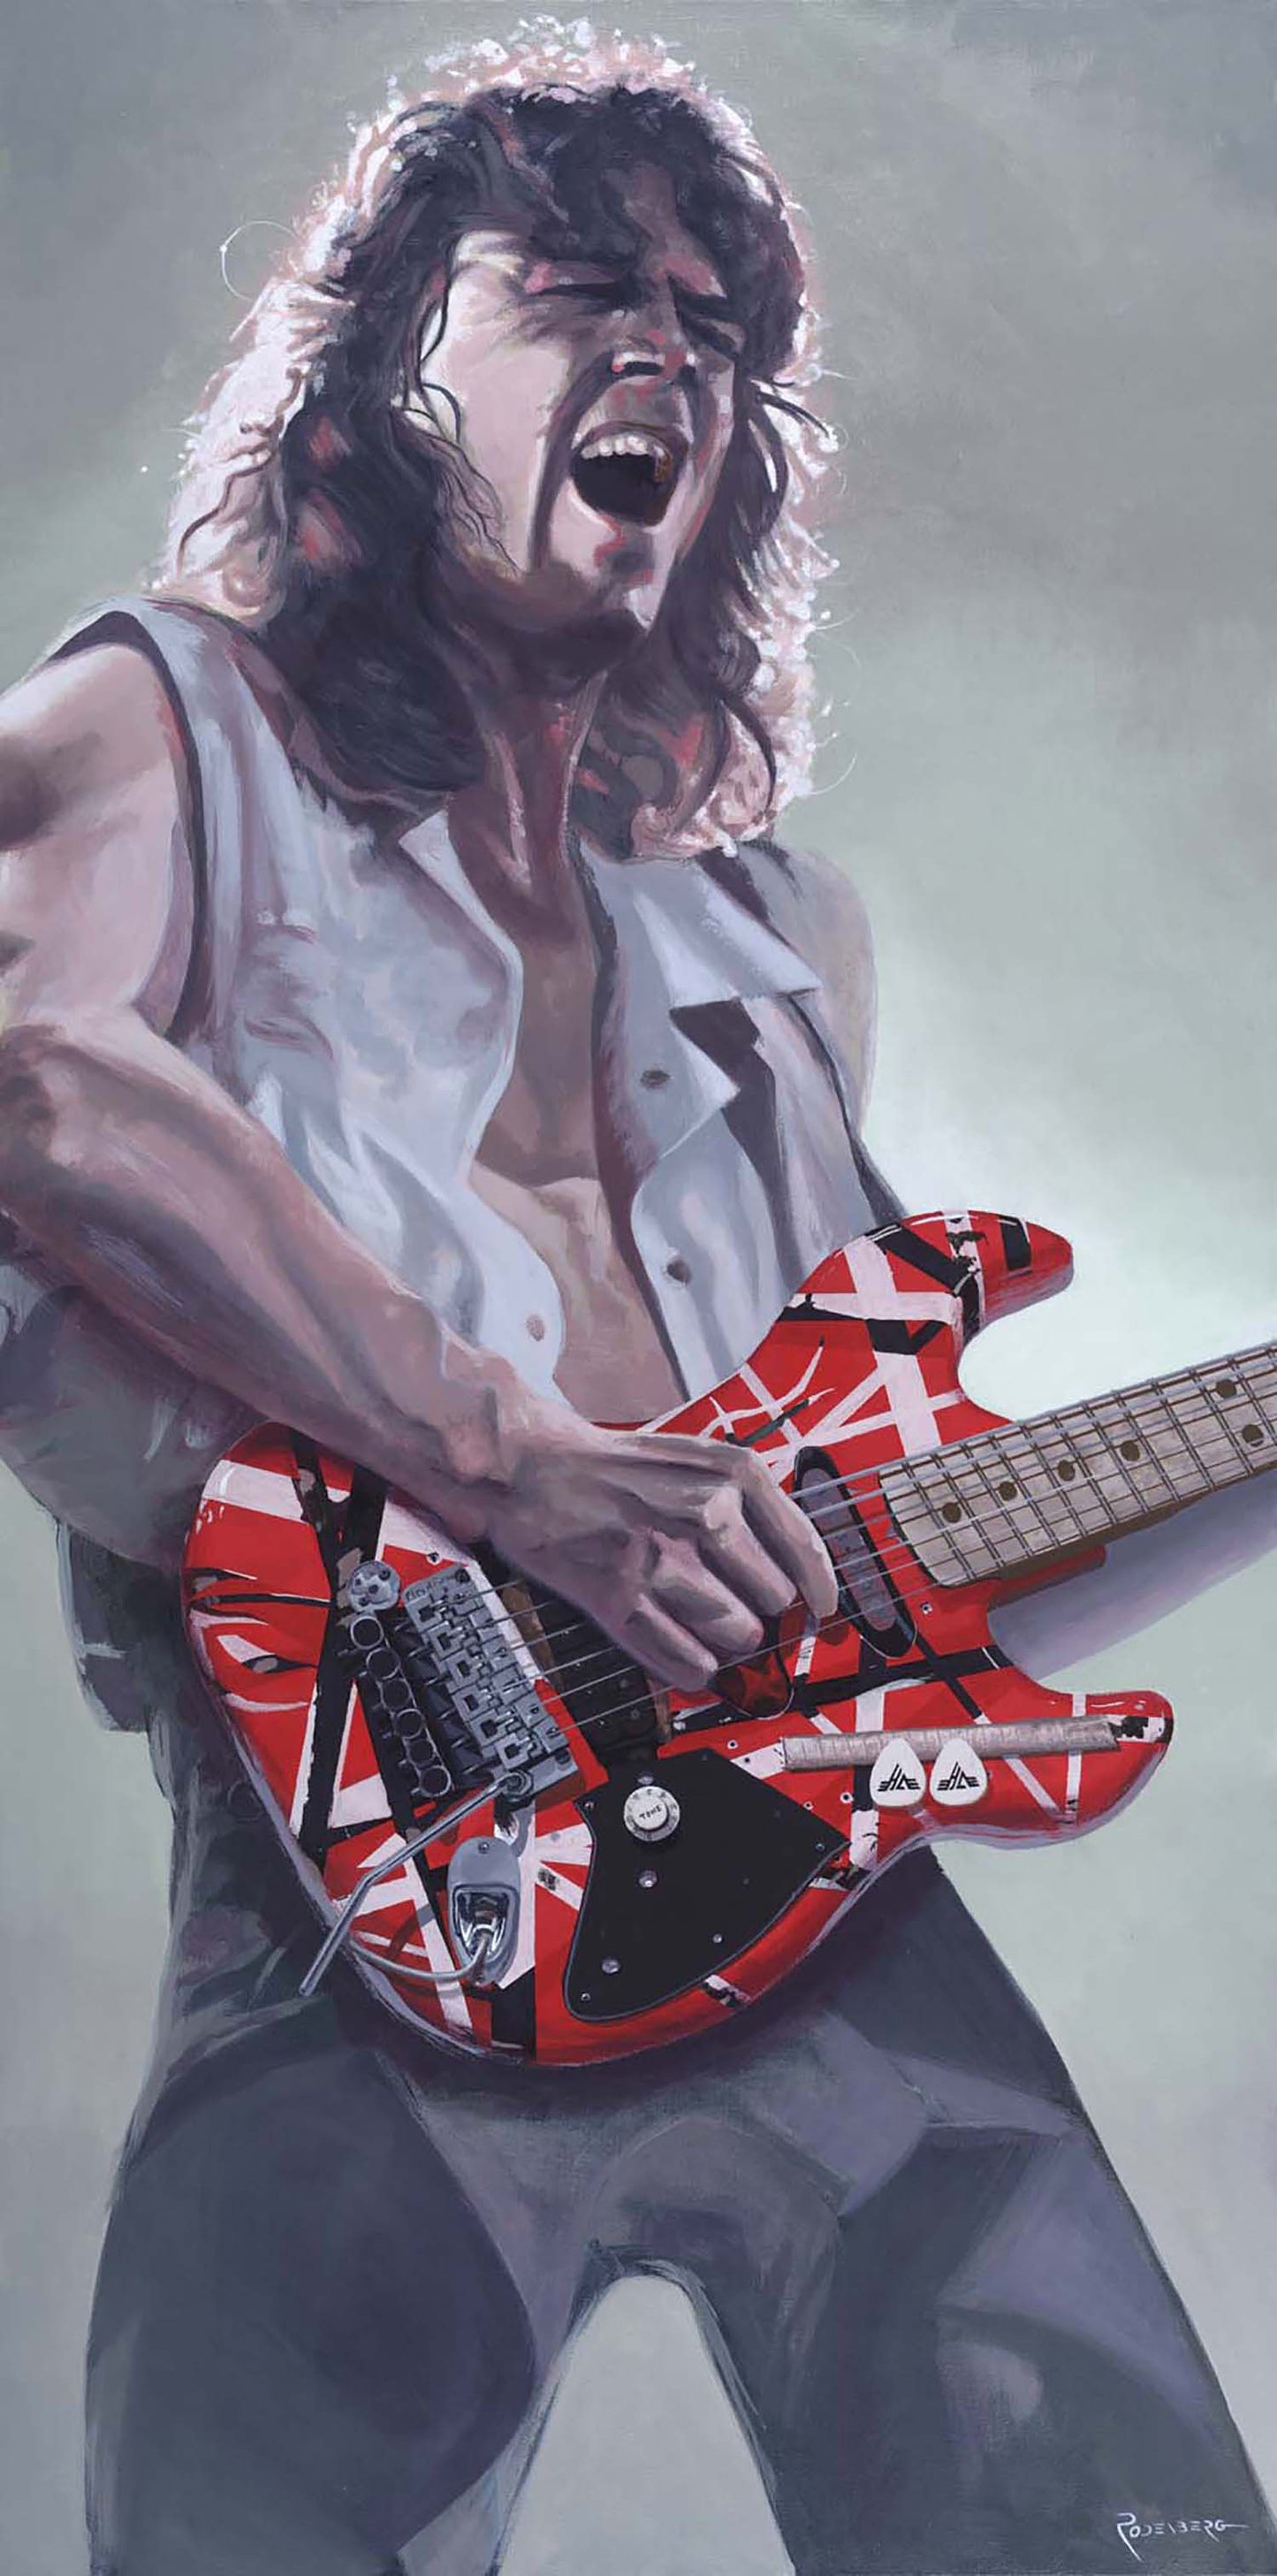 Eddie Van Halen portrait painting art by Jeff Rodenberg